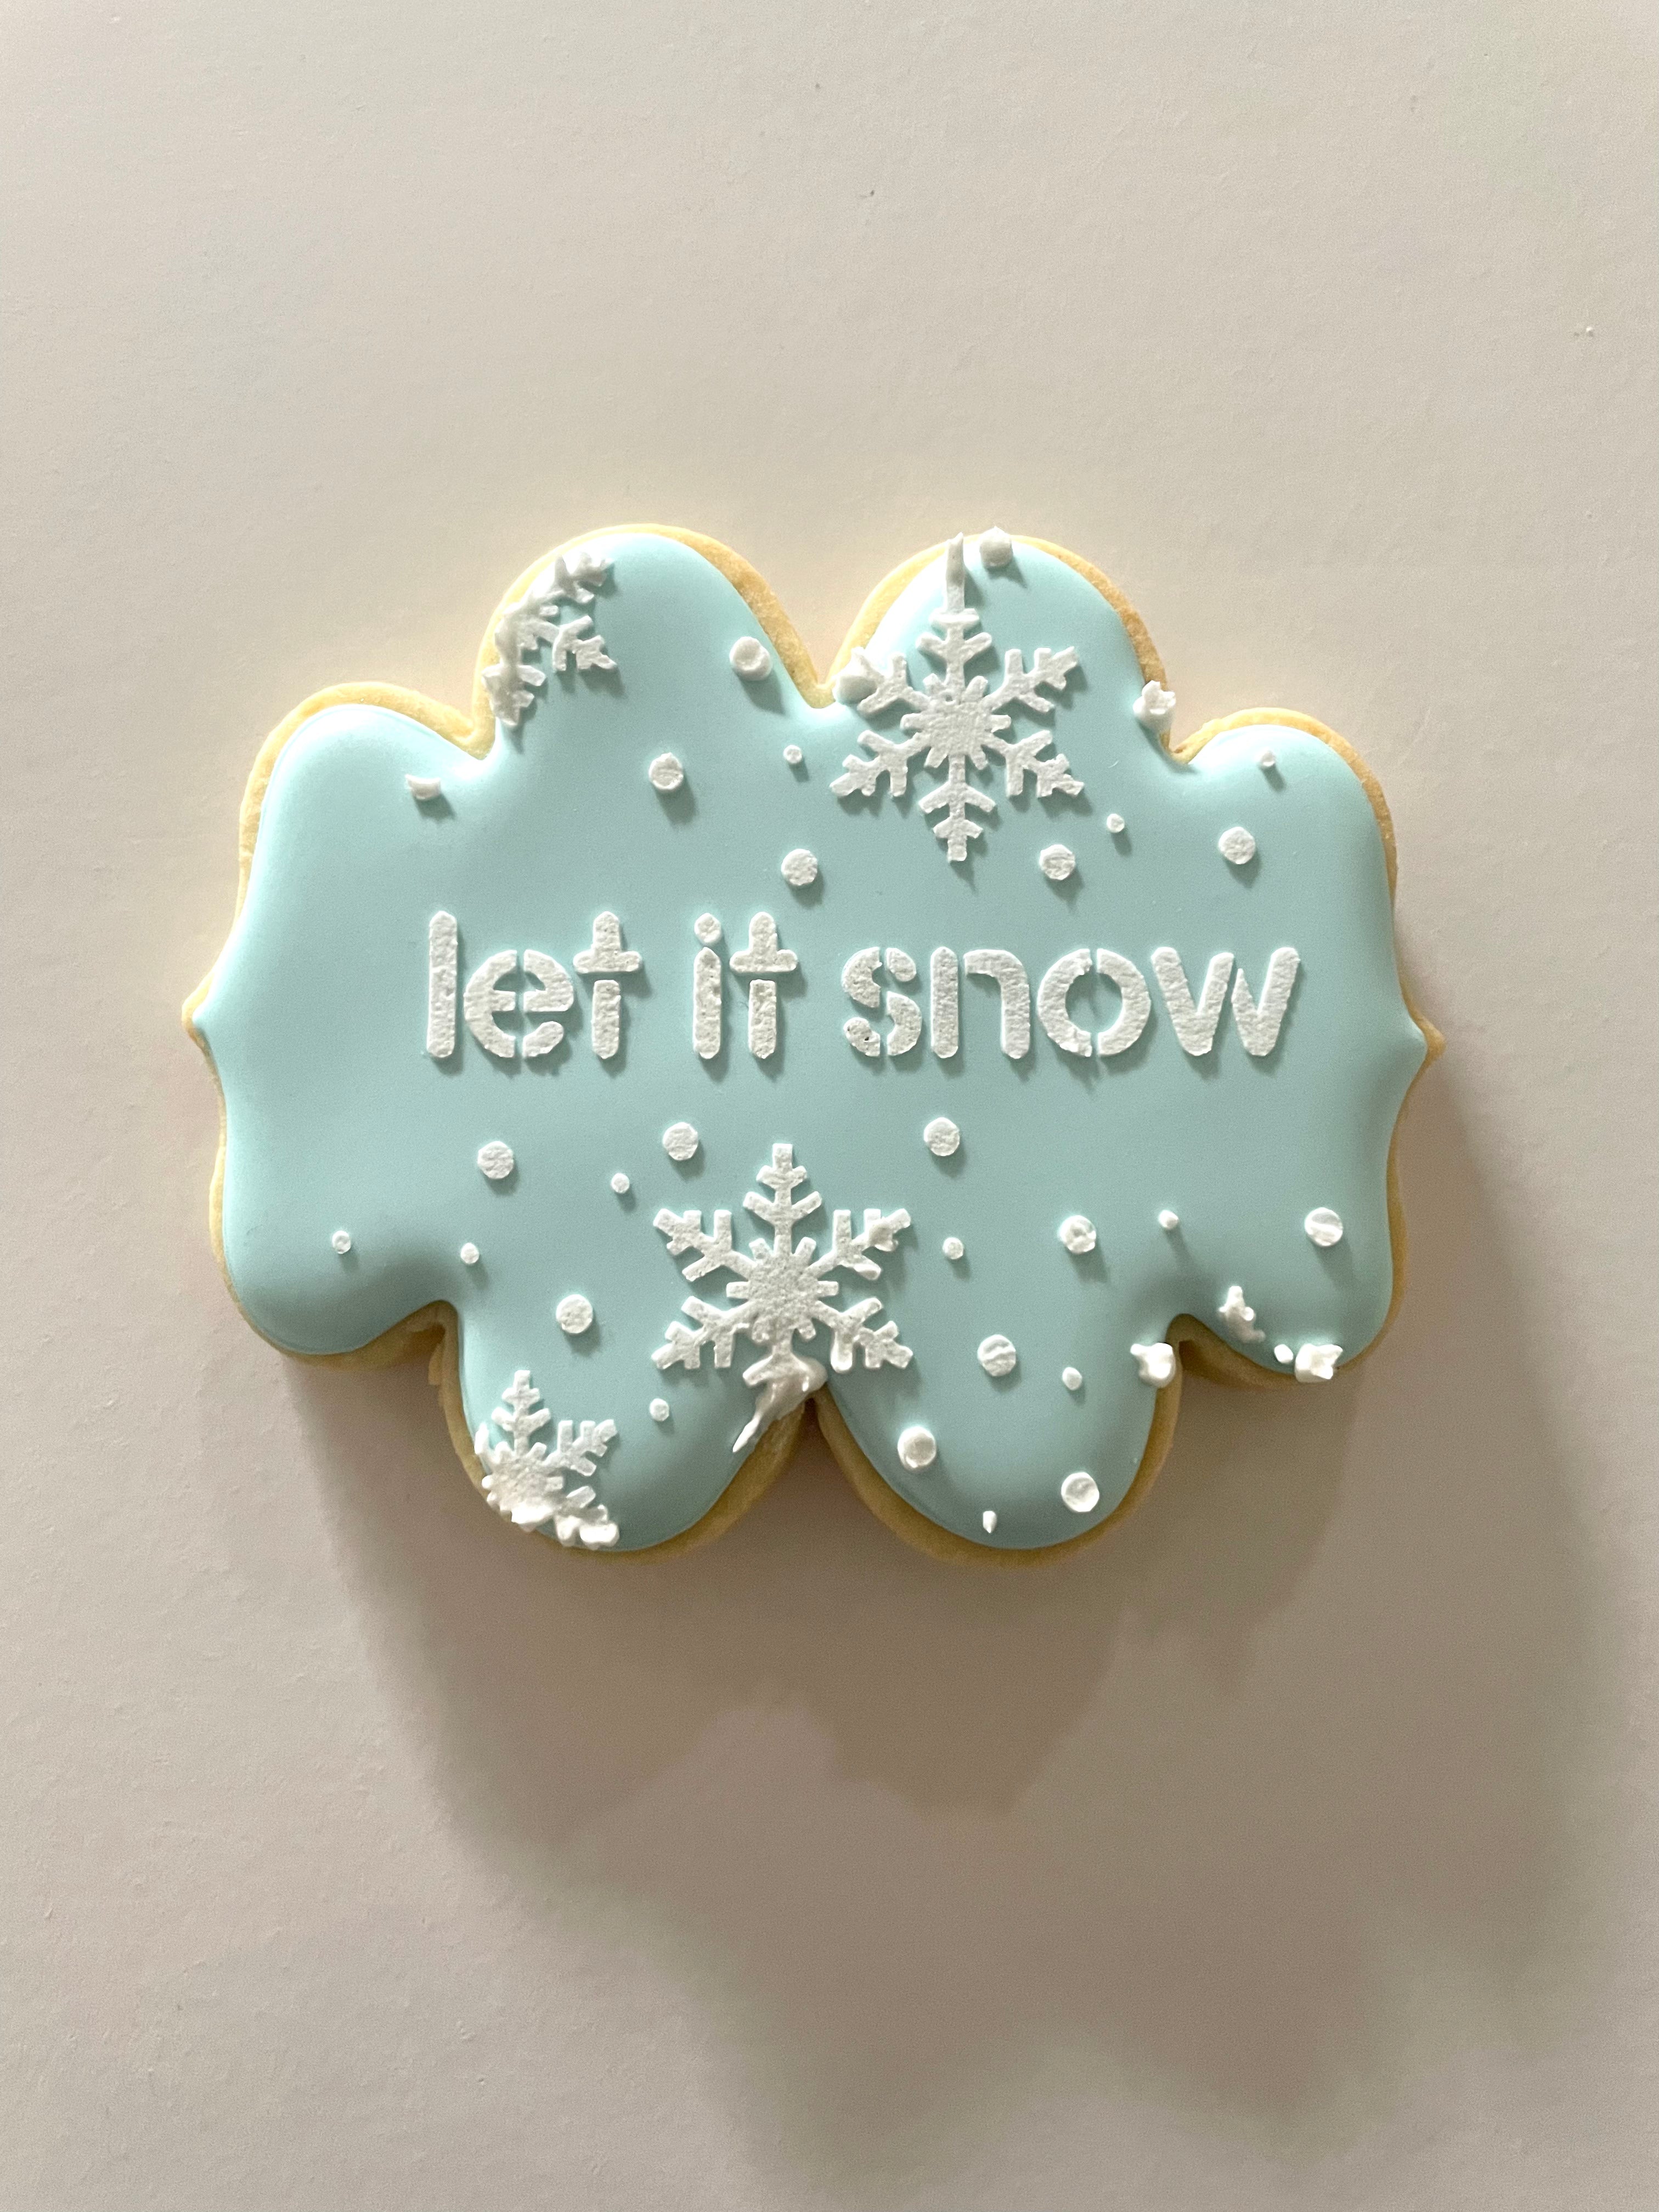 Let it snow Cookie